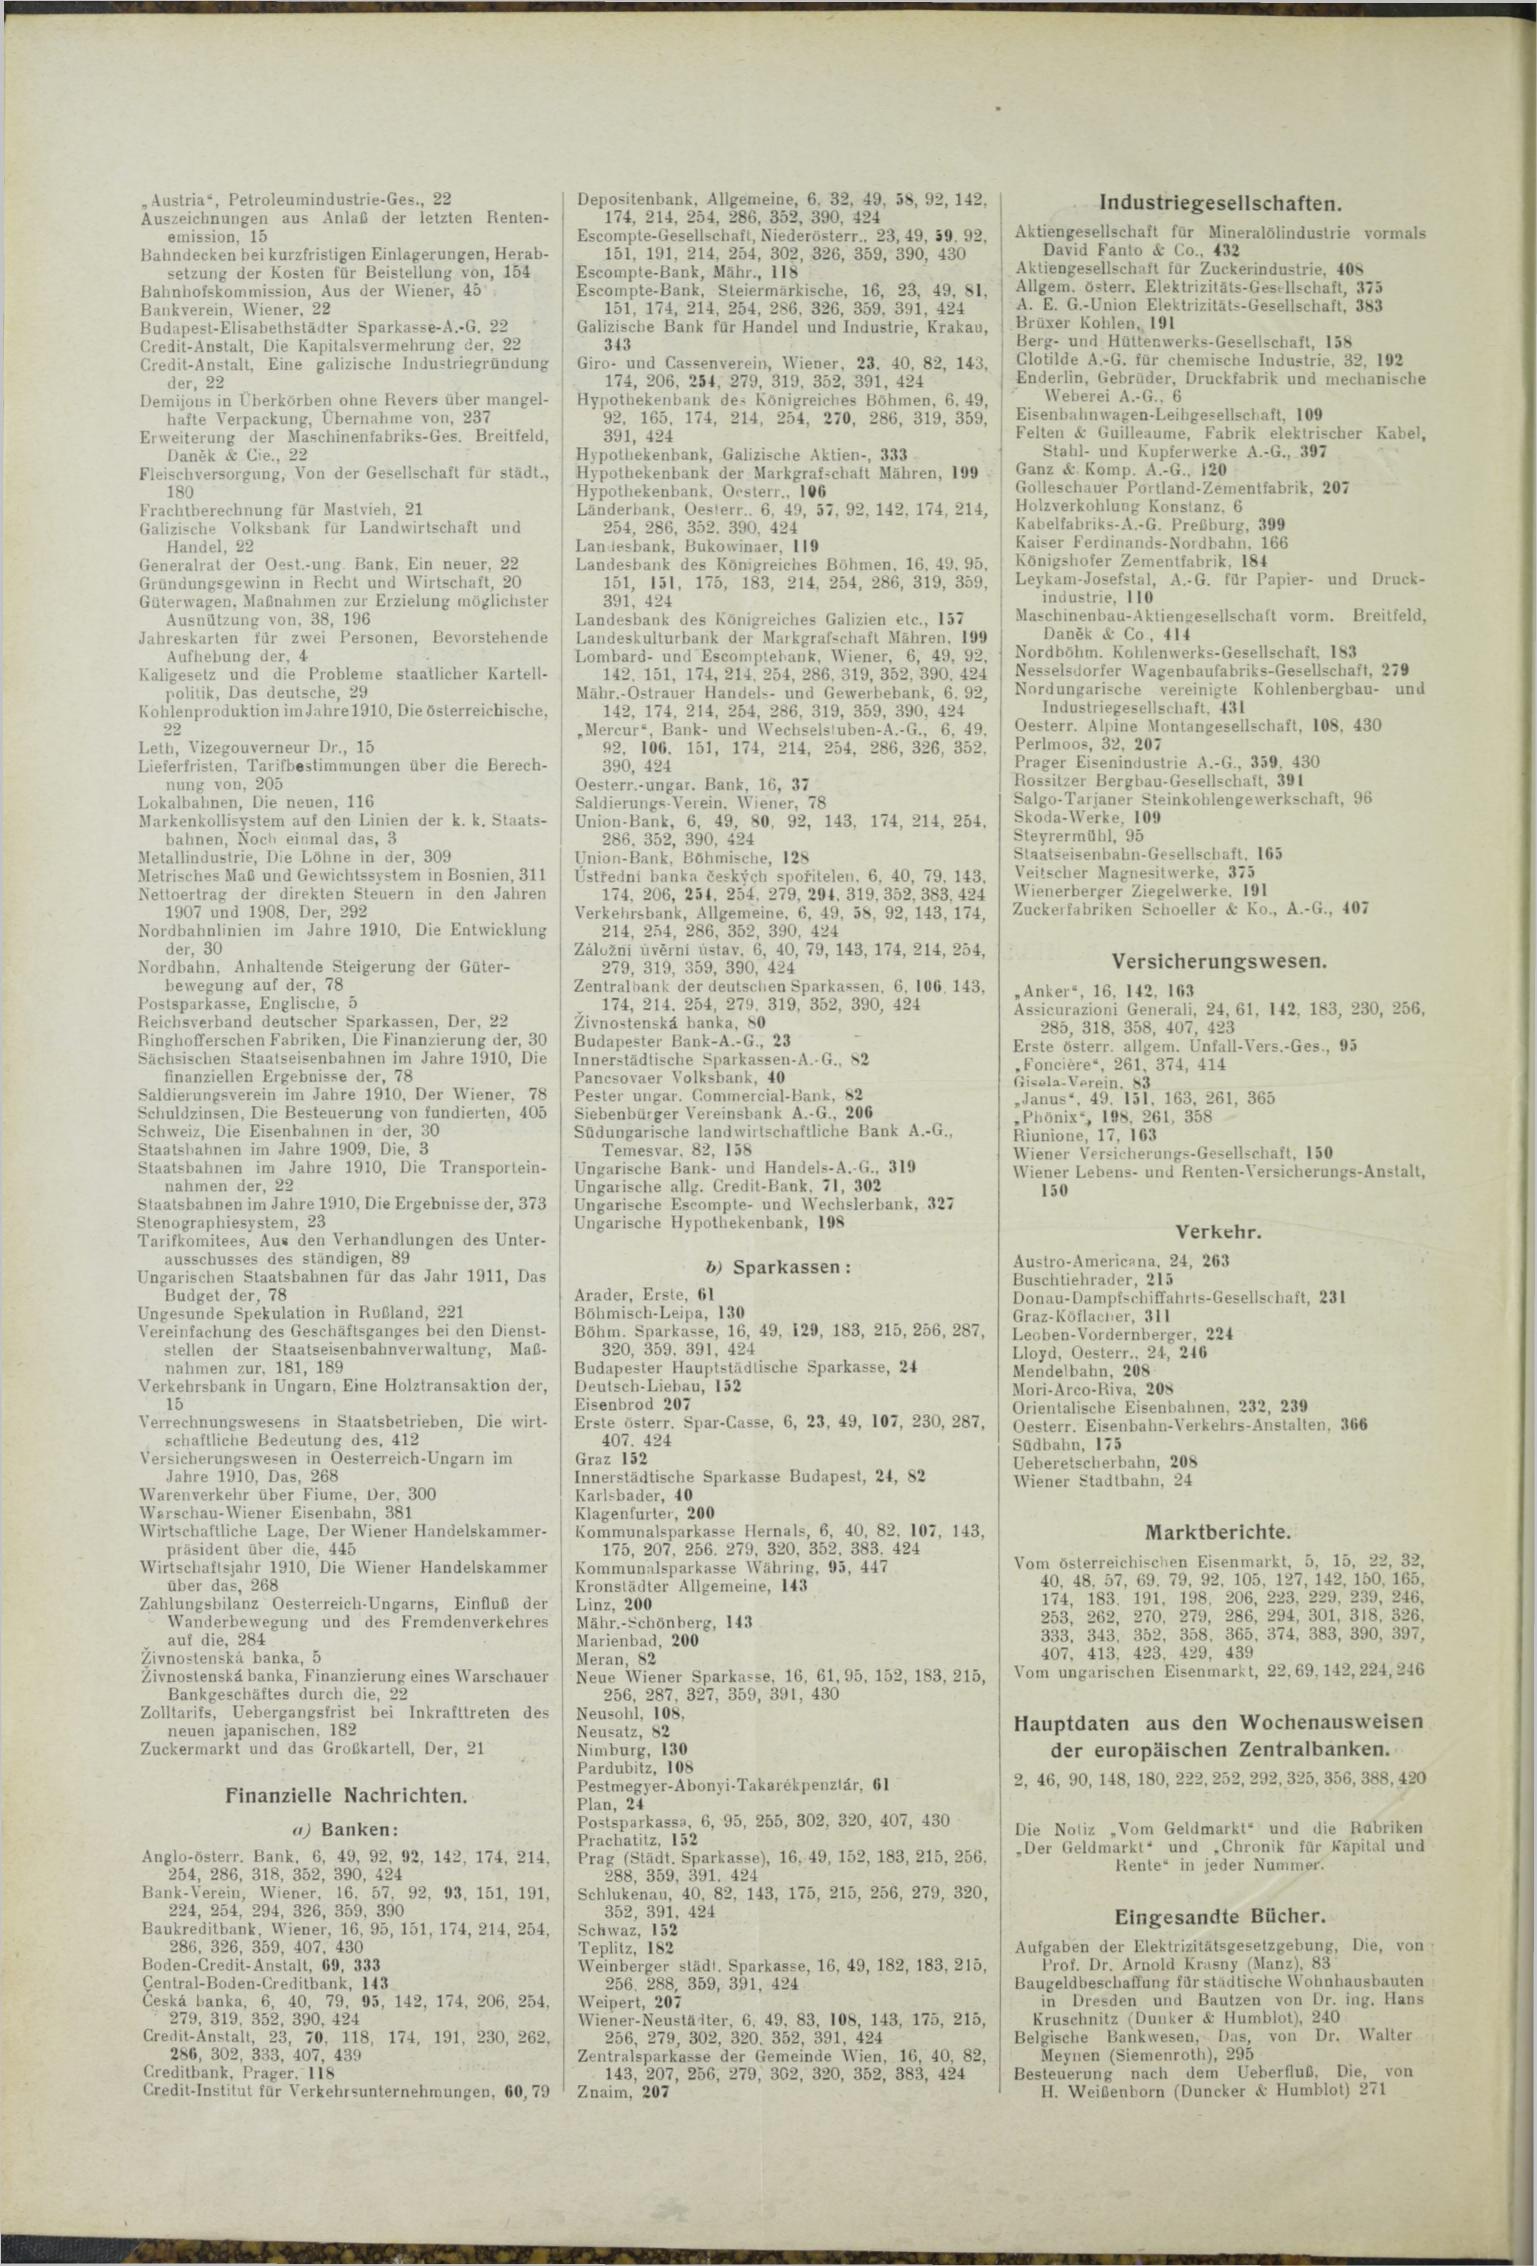 Der Tresor 04.02.1911 - Seite 10